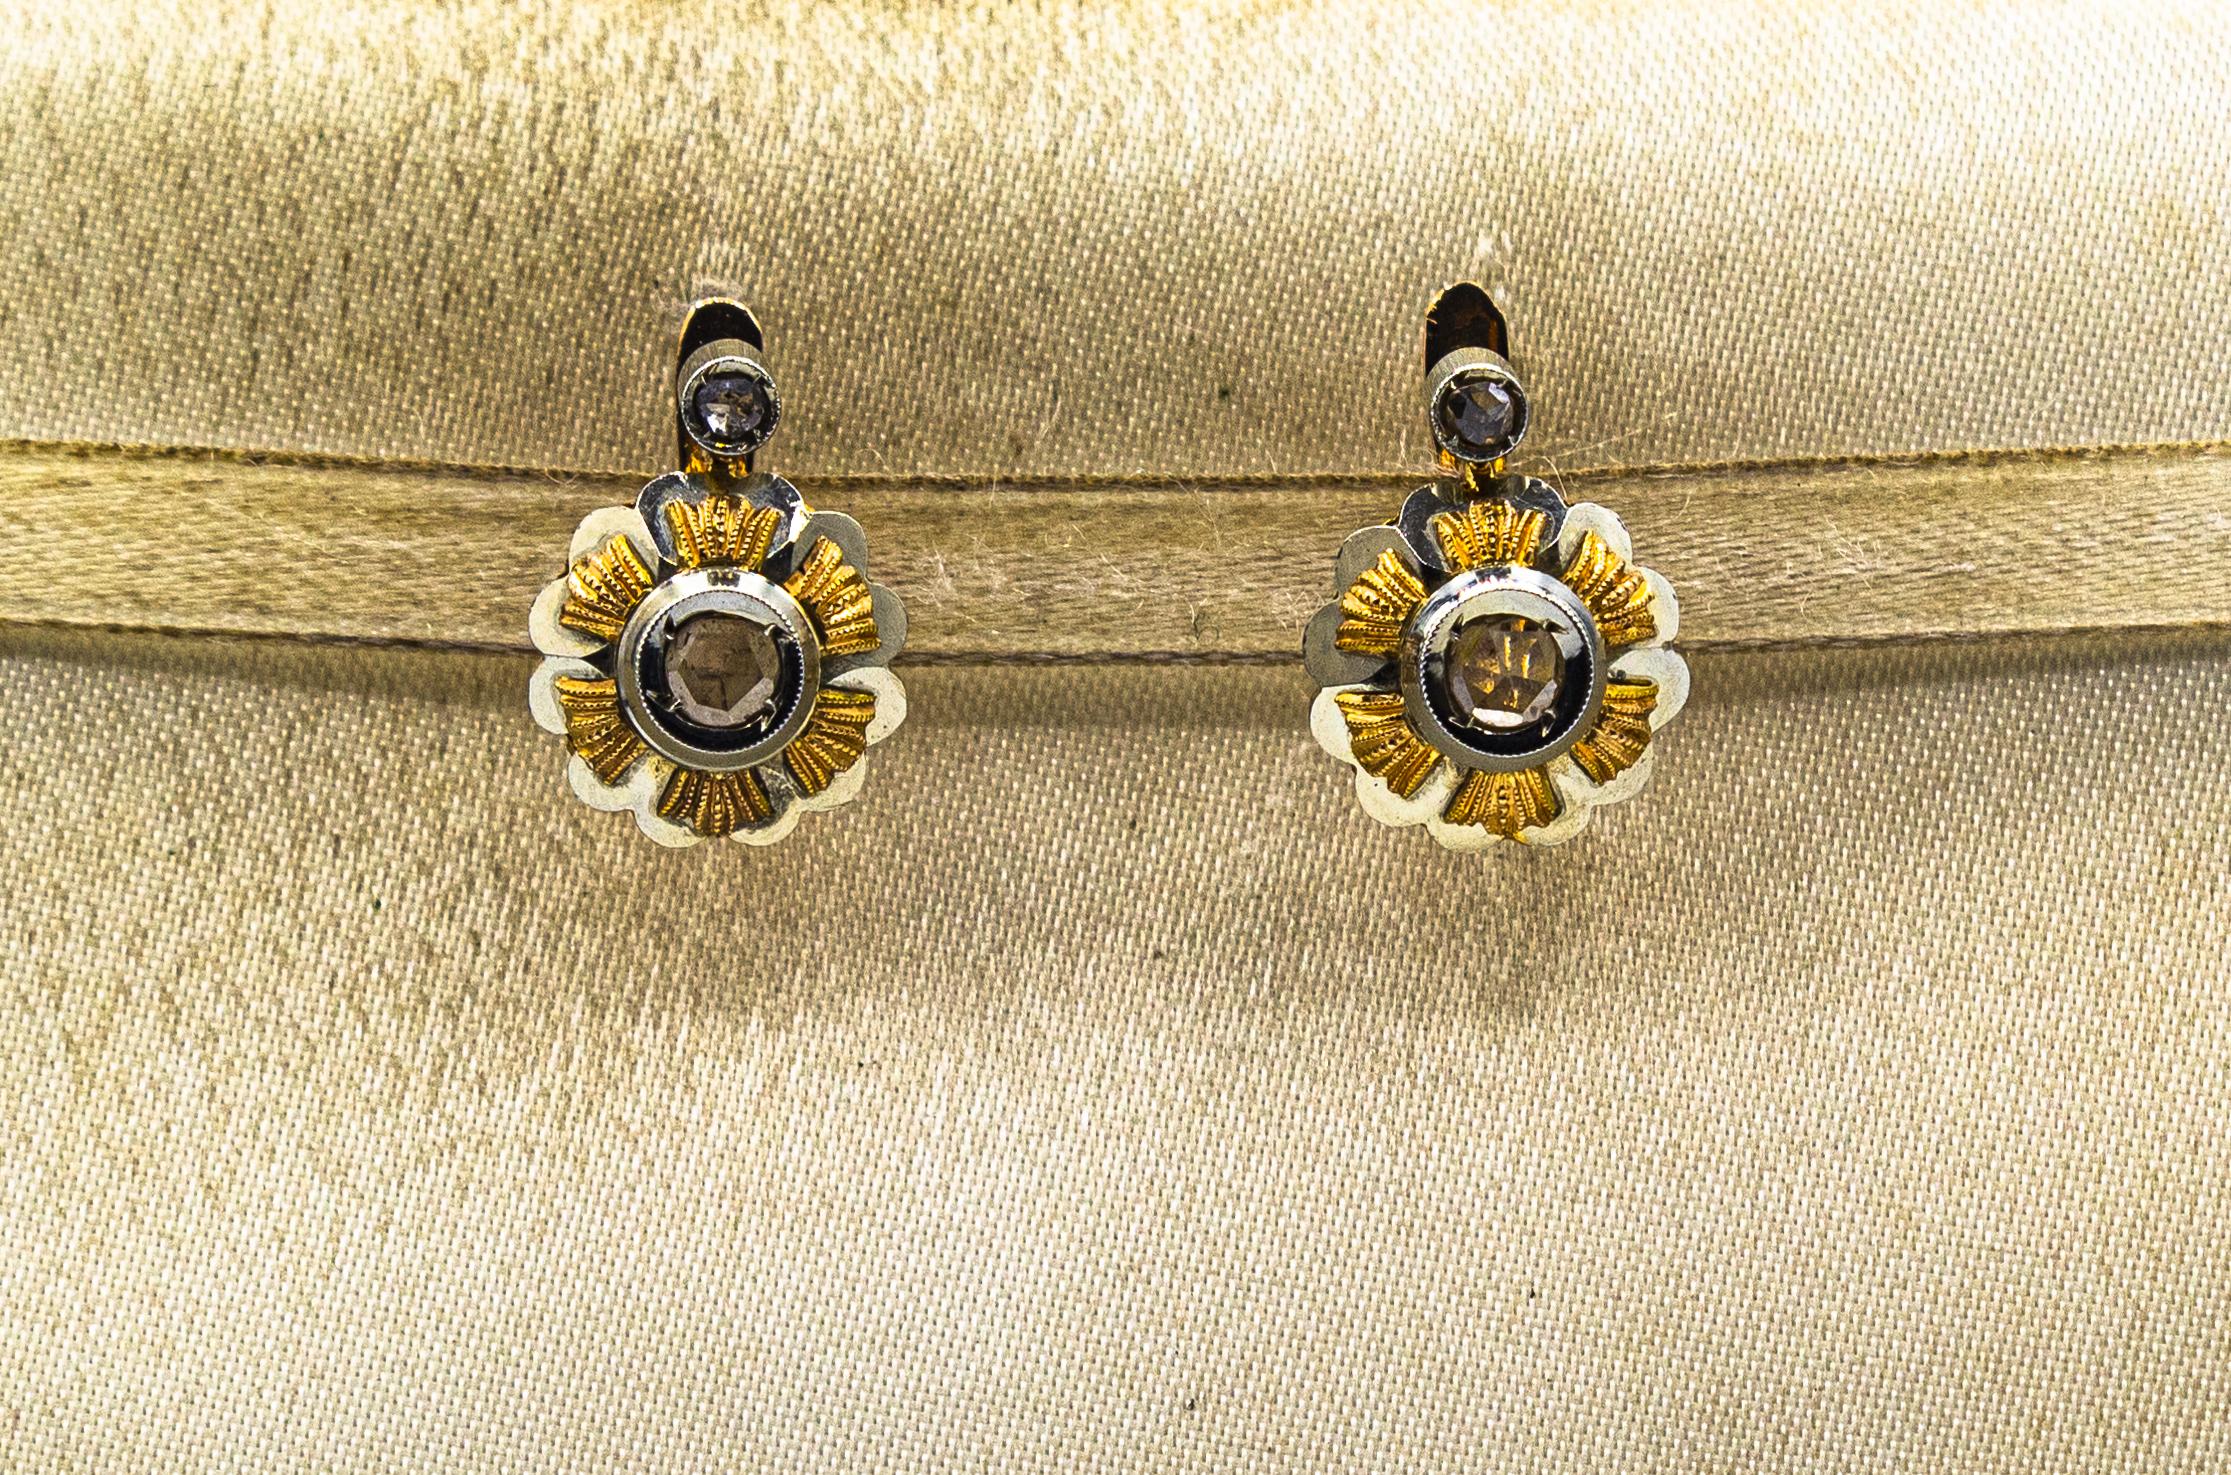 Diese Ohrringe sind aus 18K Gelbgold und 18K Weißgold gefertigt.
Diese Ohrringe bestehen aus 0,40 Karat weißen Diamanten im Rosenschliff.
Diese Ohrringe sind vom Art déco inspiriert.

Alle unsere Ohrringe haben Stifte für gepiercte Ohren, aber wir